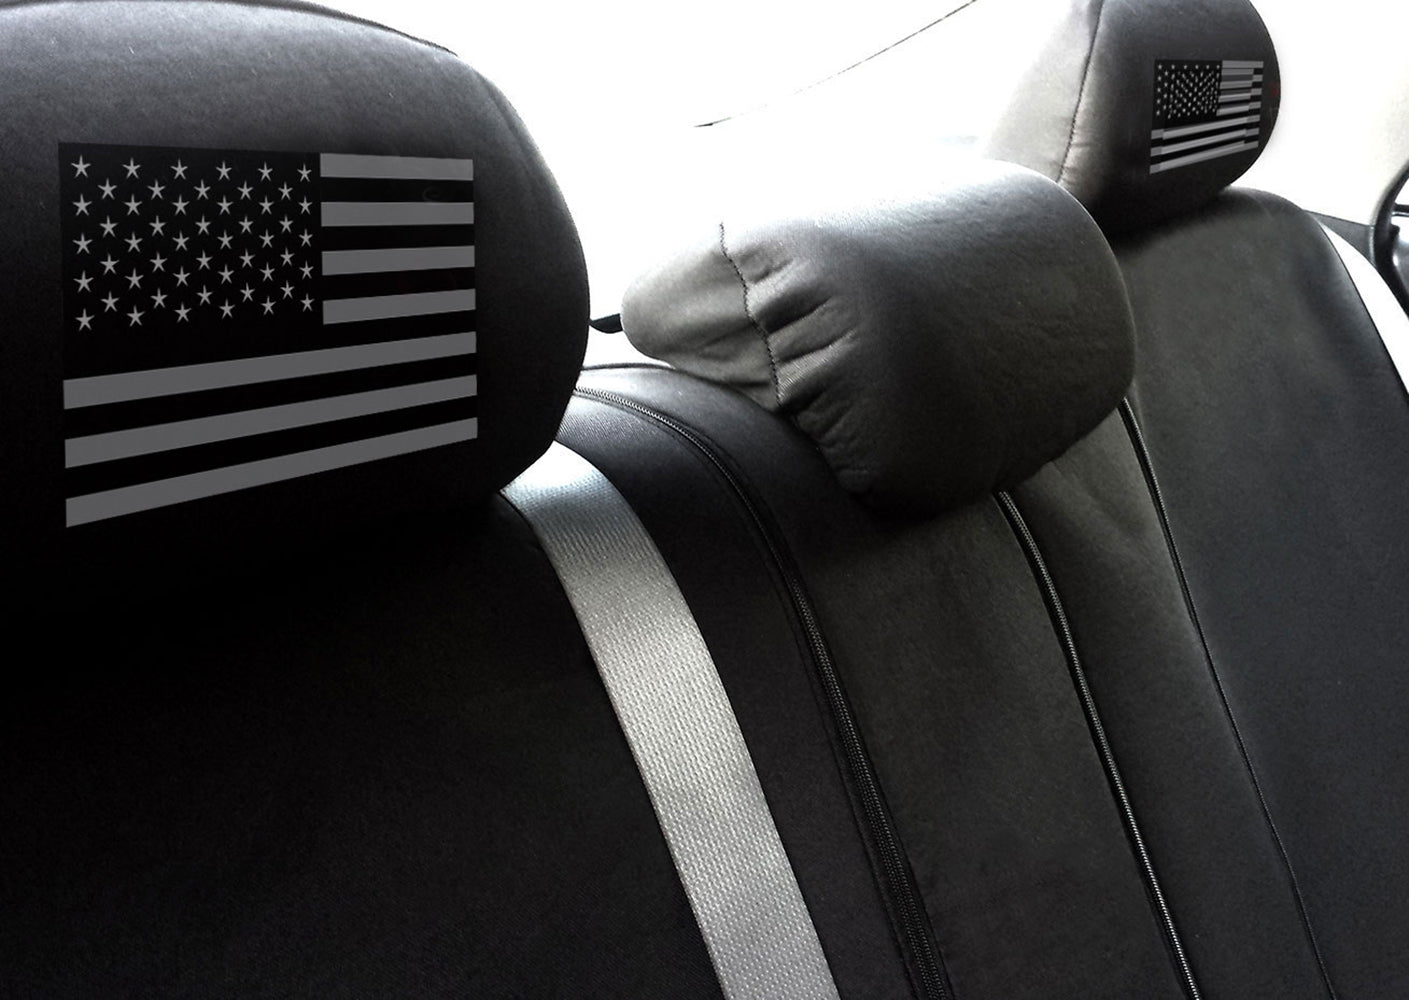 America Flag Design Auto Truck SUV Car Seat Headrest Cover rear interior image